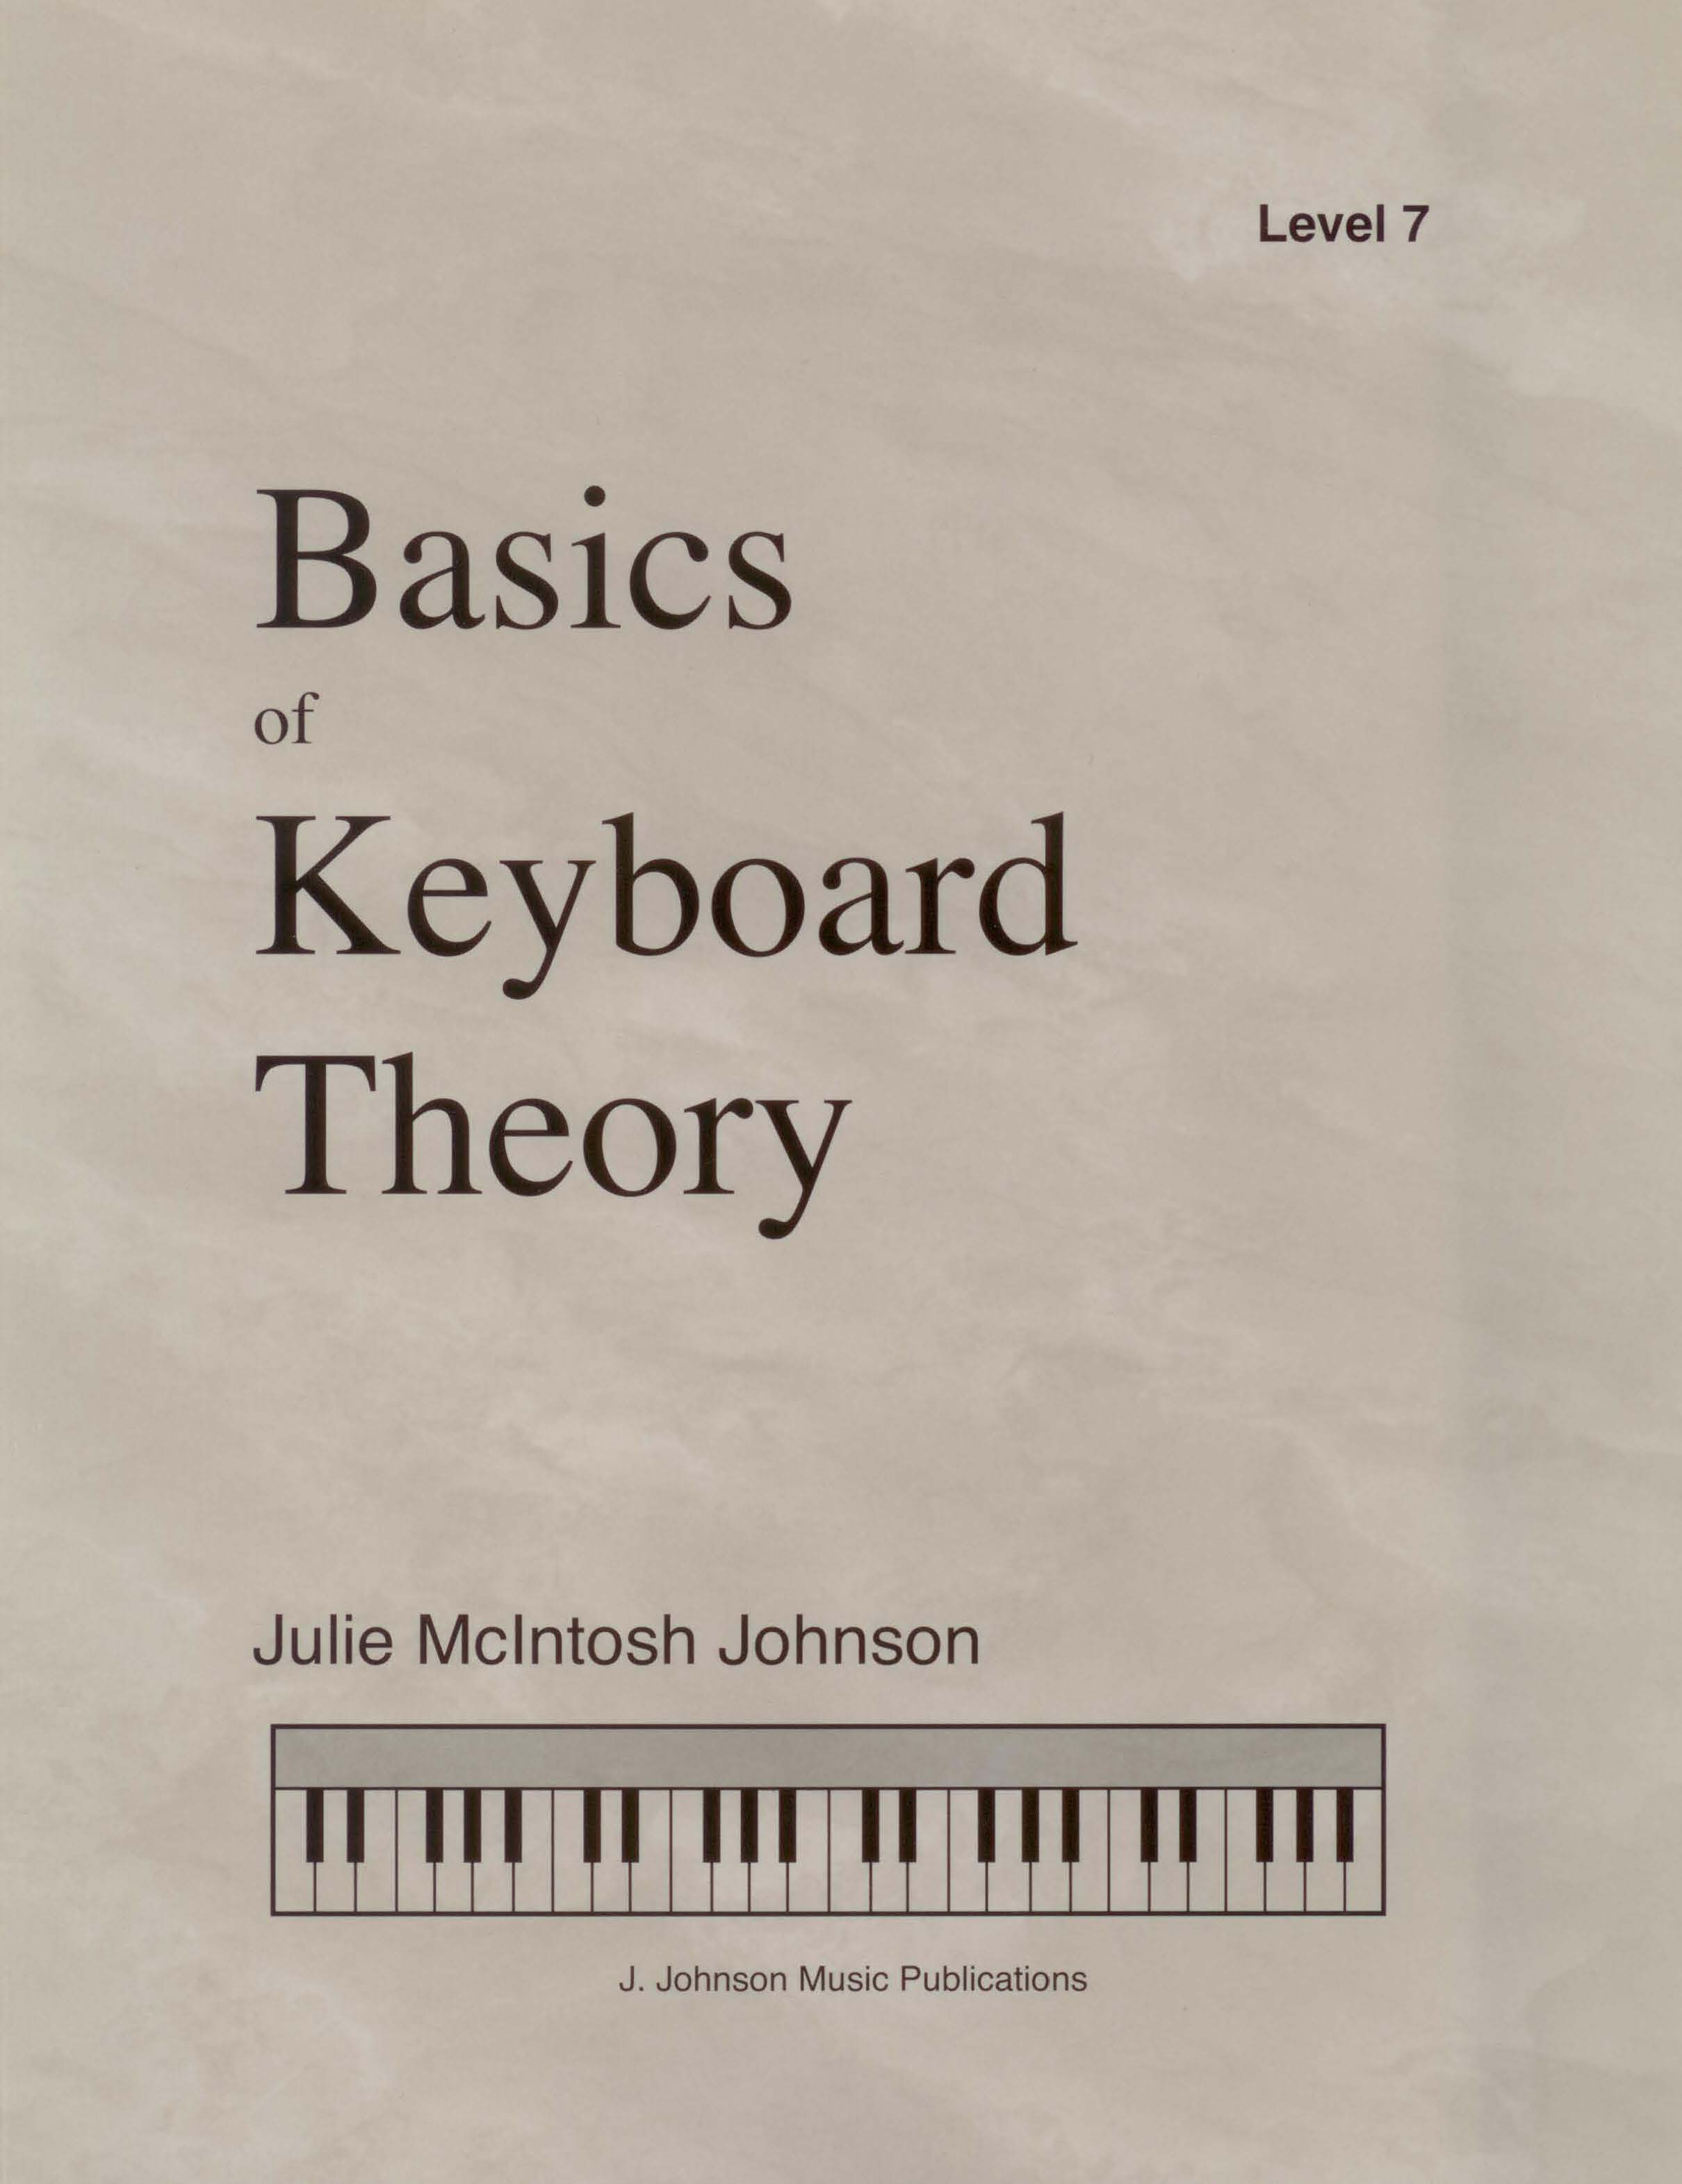 Basics of Keyboard Theory Level 7